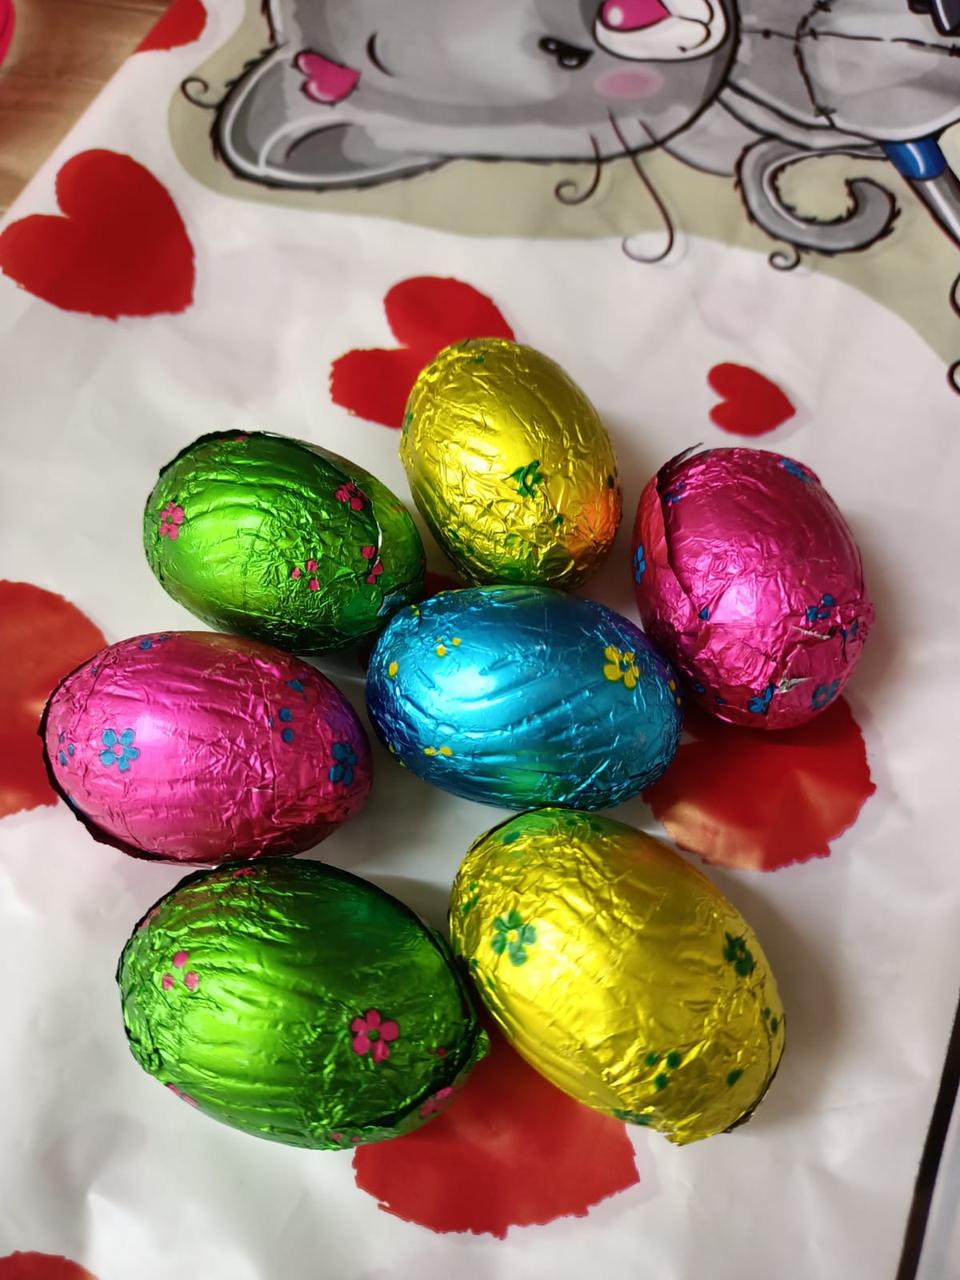 Яйца шоколадные РАЗНОЦВЕТНЫЕ с рисунком 1кг (на вес)